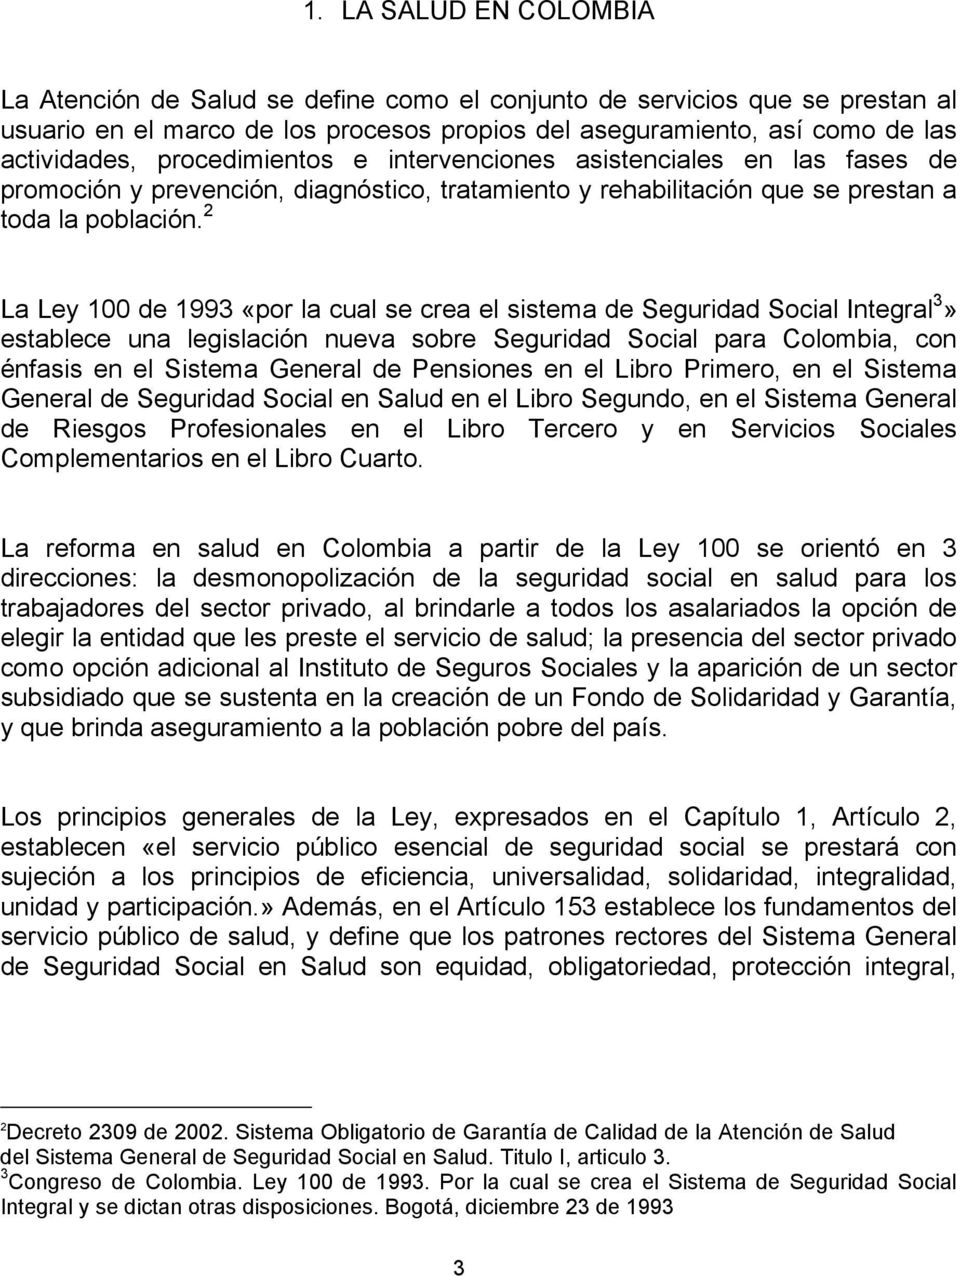 2 La Ley 100 de 1993 «por la cual se crea el sistema de Seguridad Social Integral 3» establece una legislación nueva sobre Seguridad Social para Colombia, con énfasis en el Sistema General de